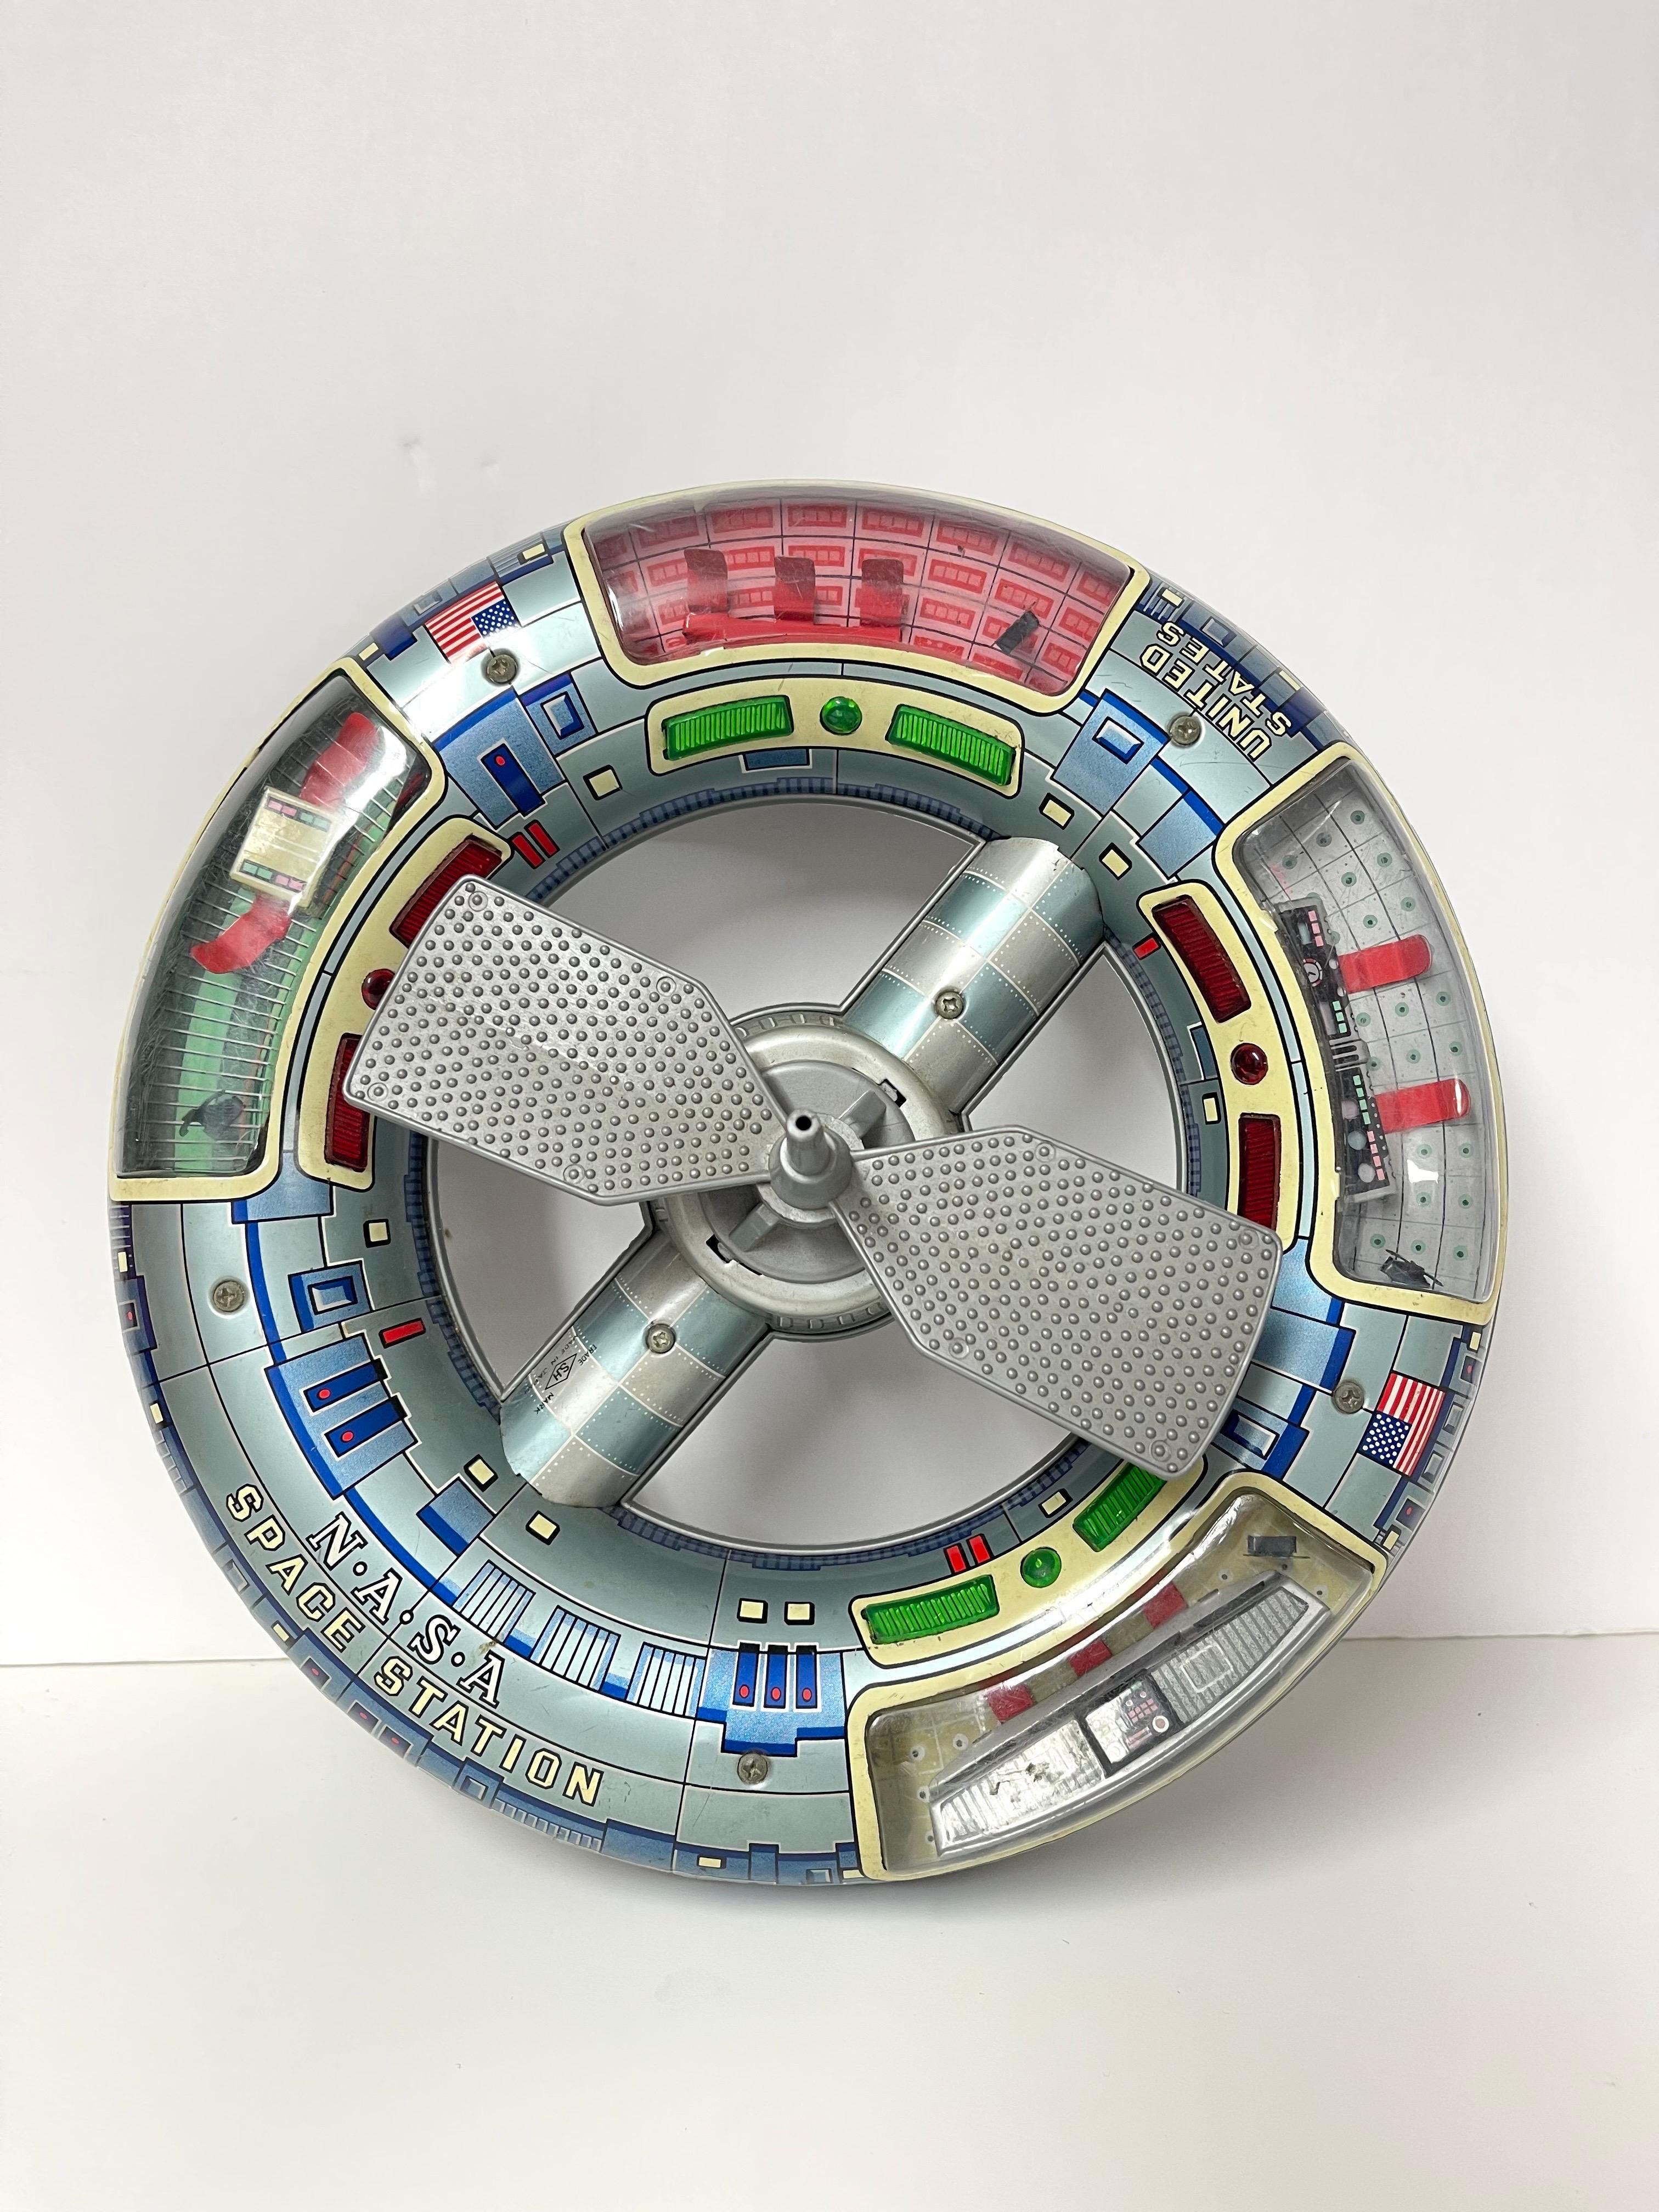 Rare et Collectional 1960's Horikawa Space Station Toy. Parfait pour le collectionneur de jouets de l'ère spatiale. Sphère en fer-blanc lithographiée avec l'inscription Nasa Space Station sur le côté, avec intérieur moulé en plastique et antenne